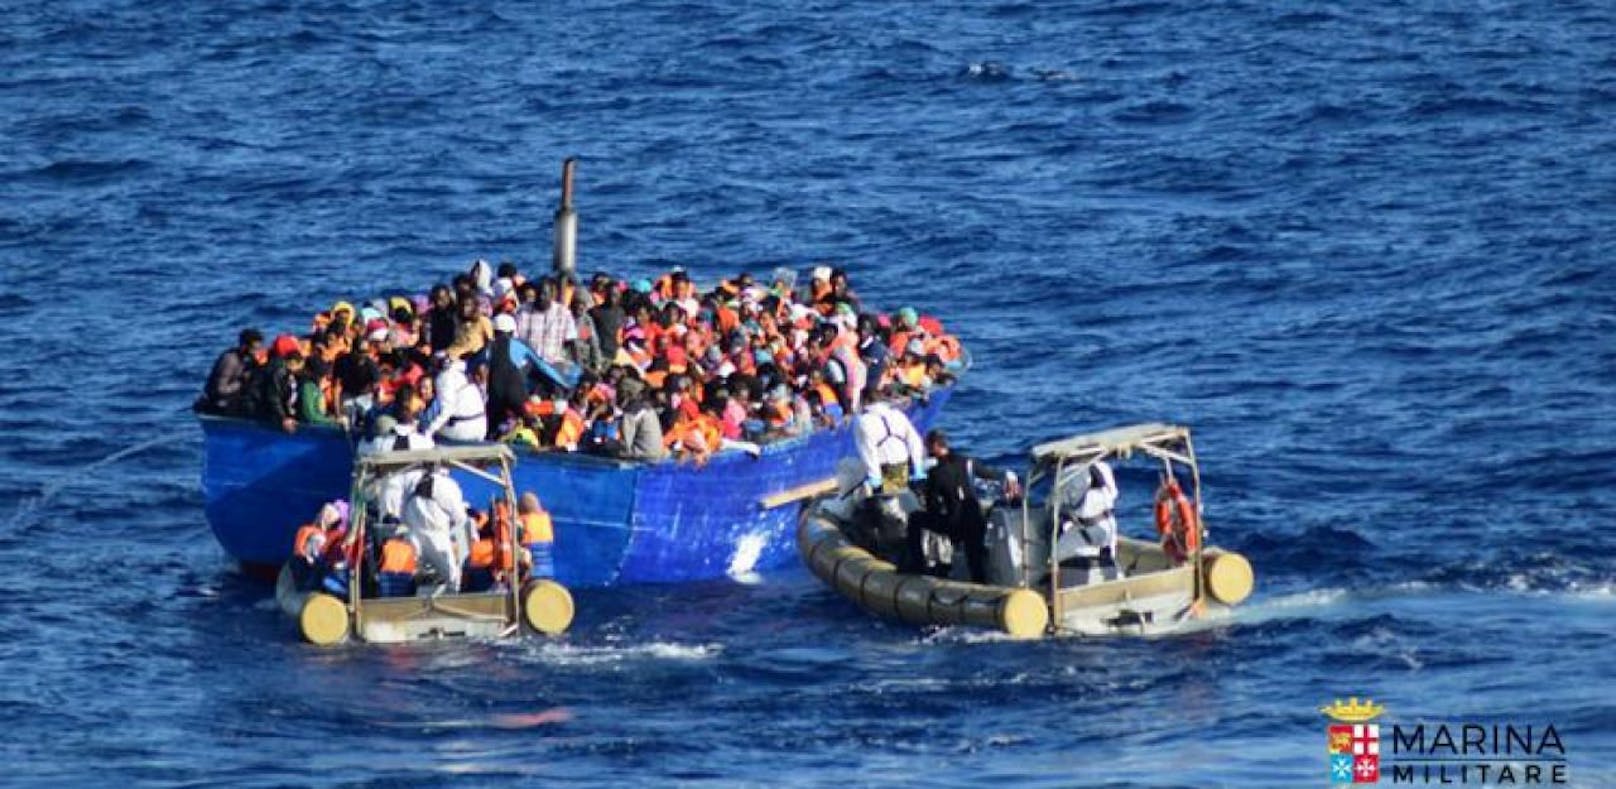 Die EU will strenger kontrollieren, wie die Flüchtlingshelfer vorgehen.